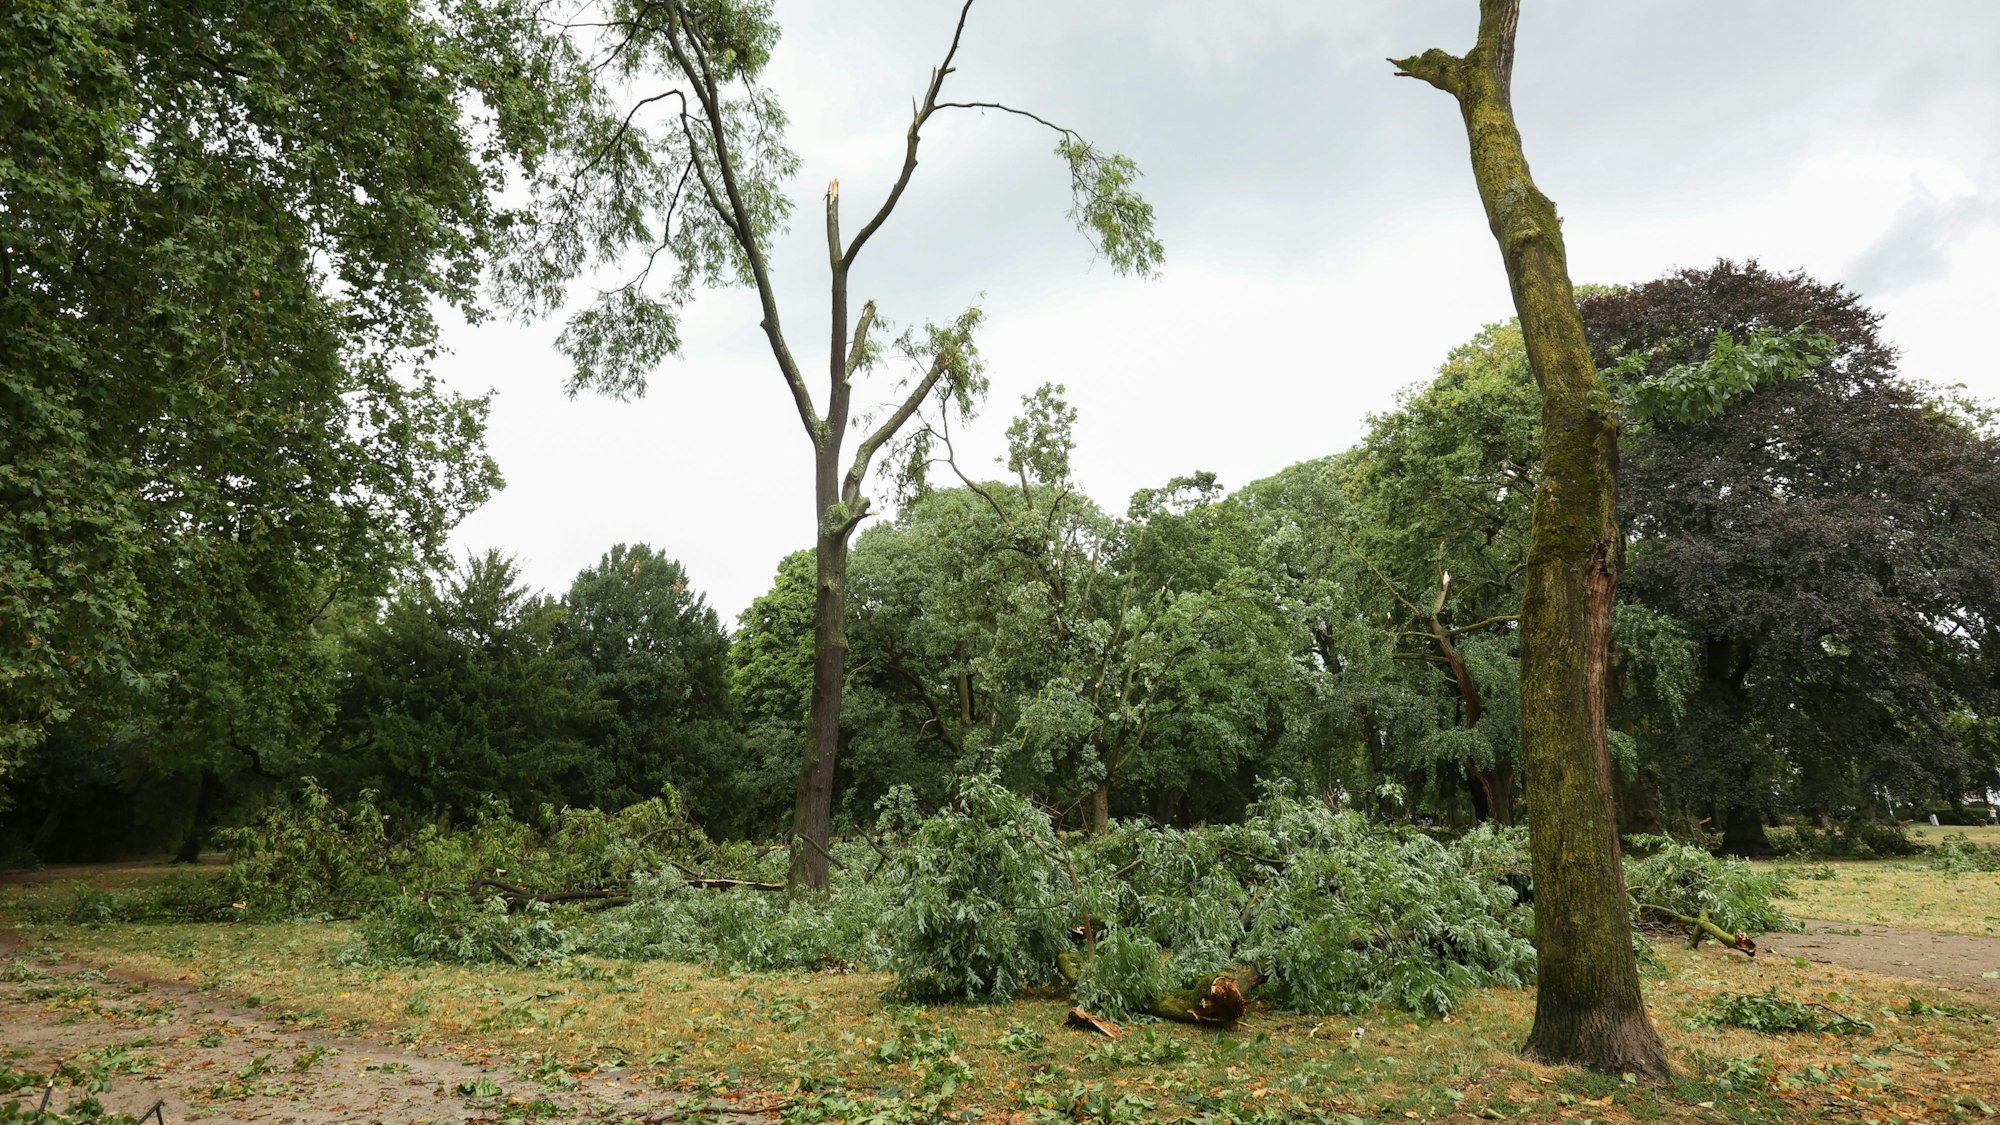 Unwetter in Köln am 24. Juli: Große Äste sind von Bäumen im Stadtgarten abgebrochen.

